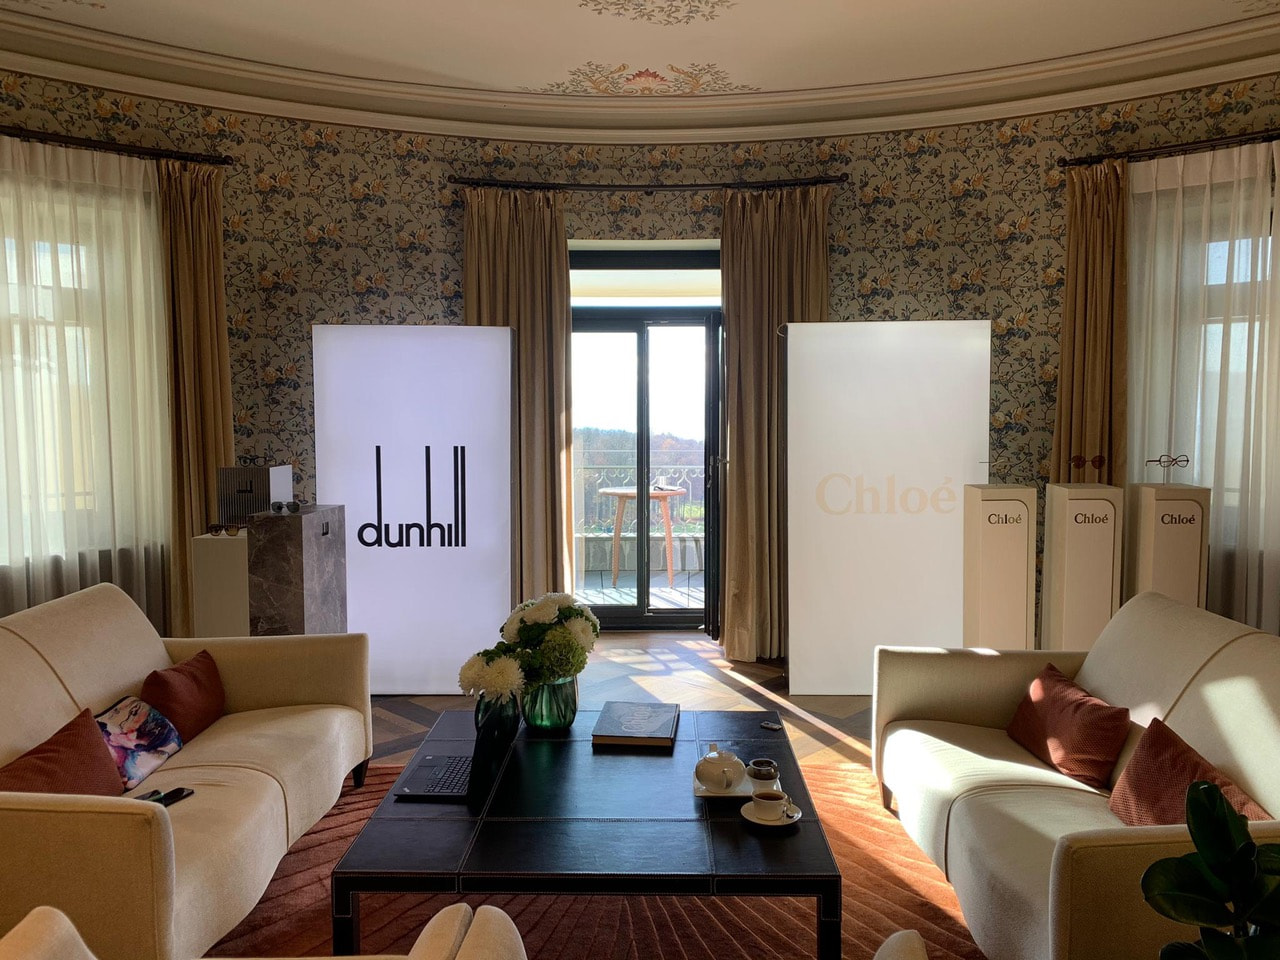 BRAINARTIST: Salon-Suite im Dolder Grand Hotel in Zürich mit gelieferten Leuchtkasten und Stelen von Dunhill und Chloé